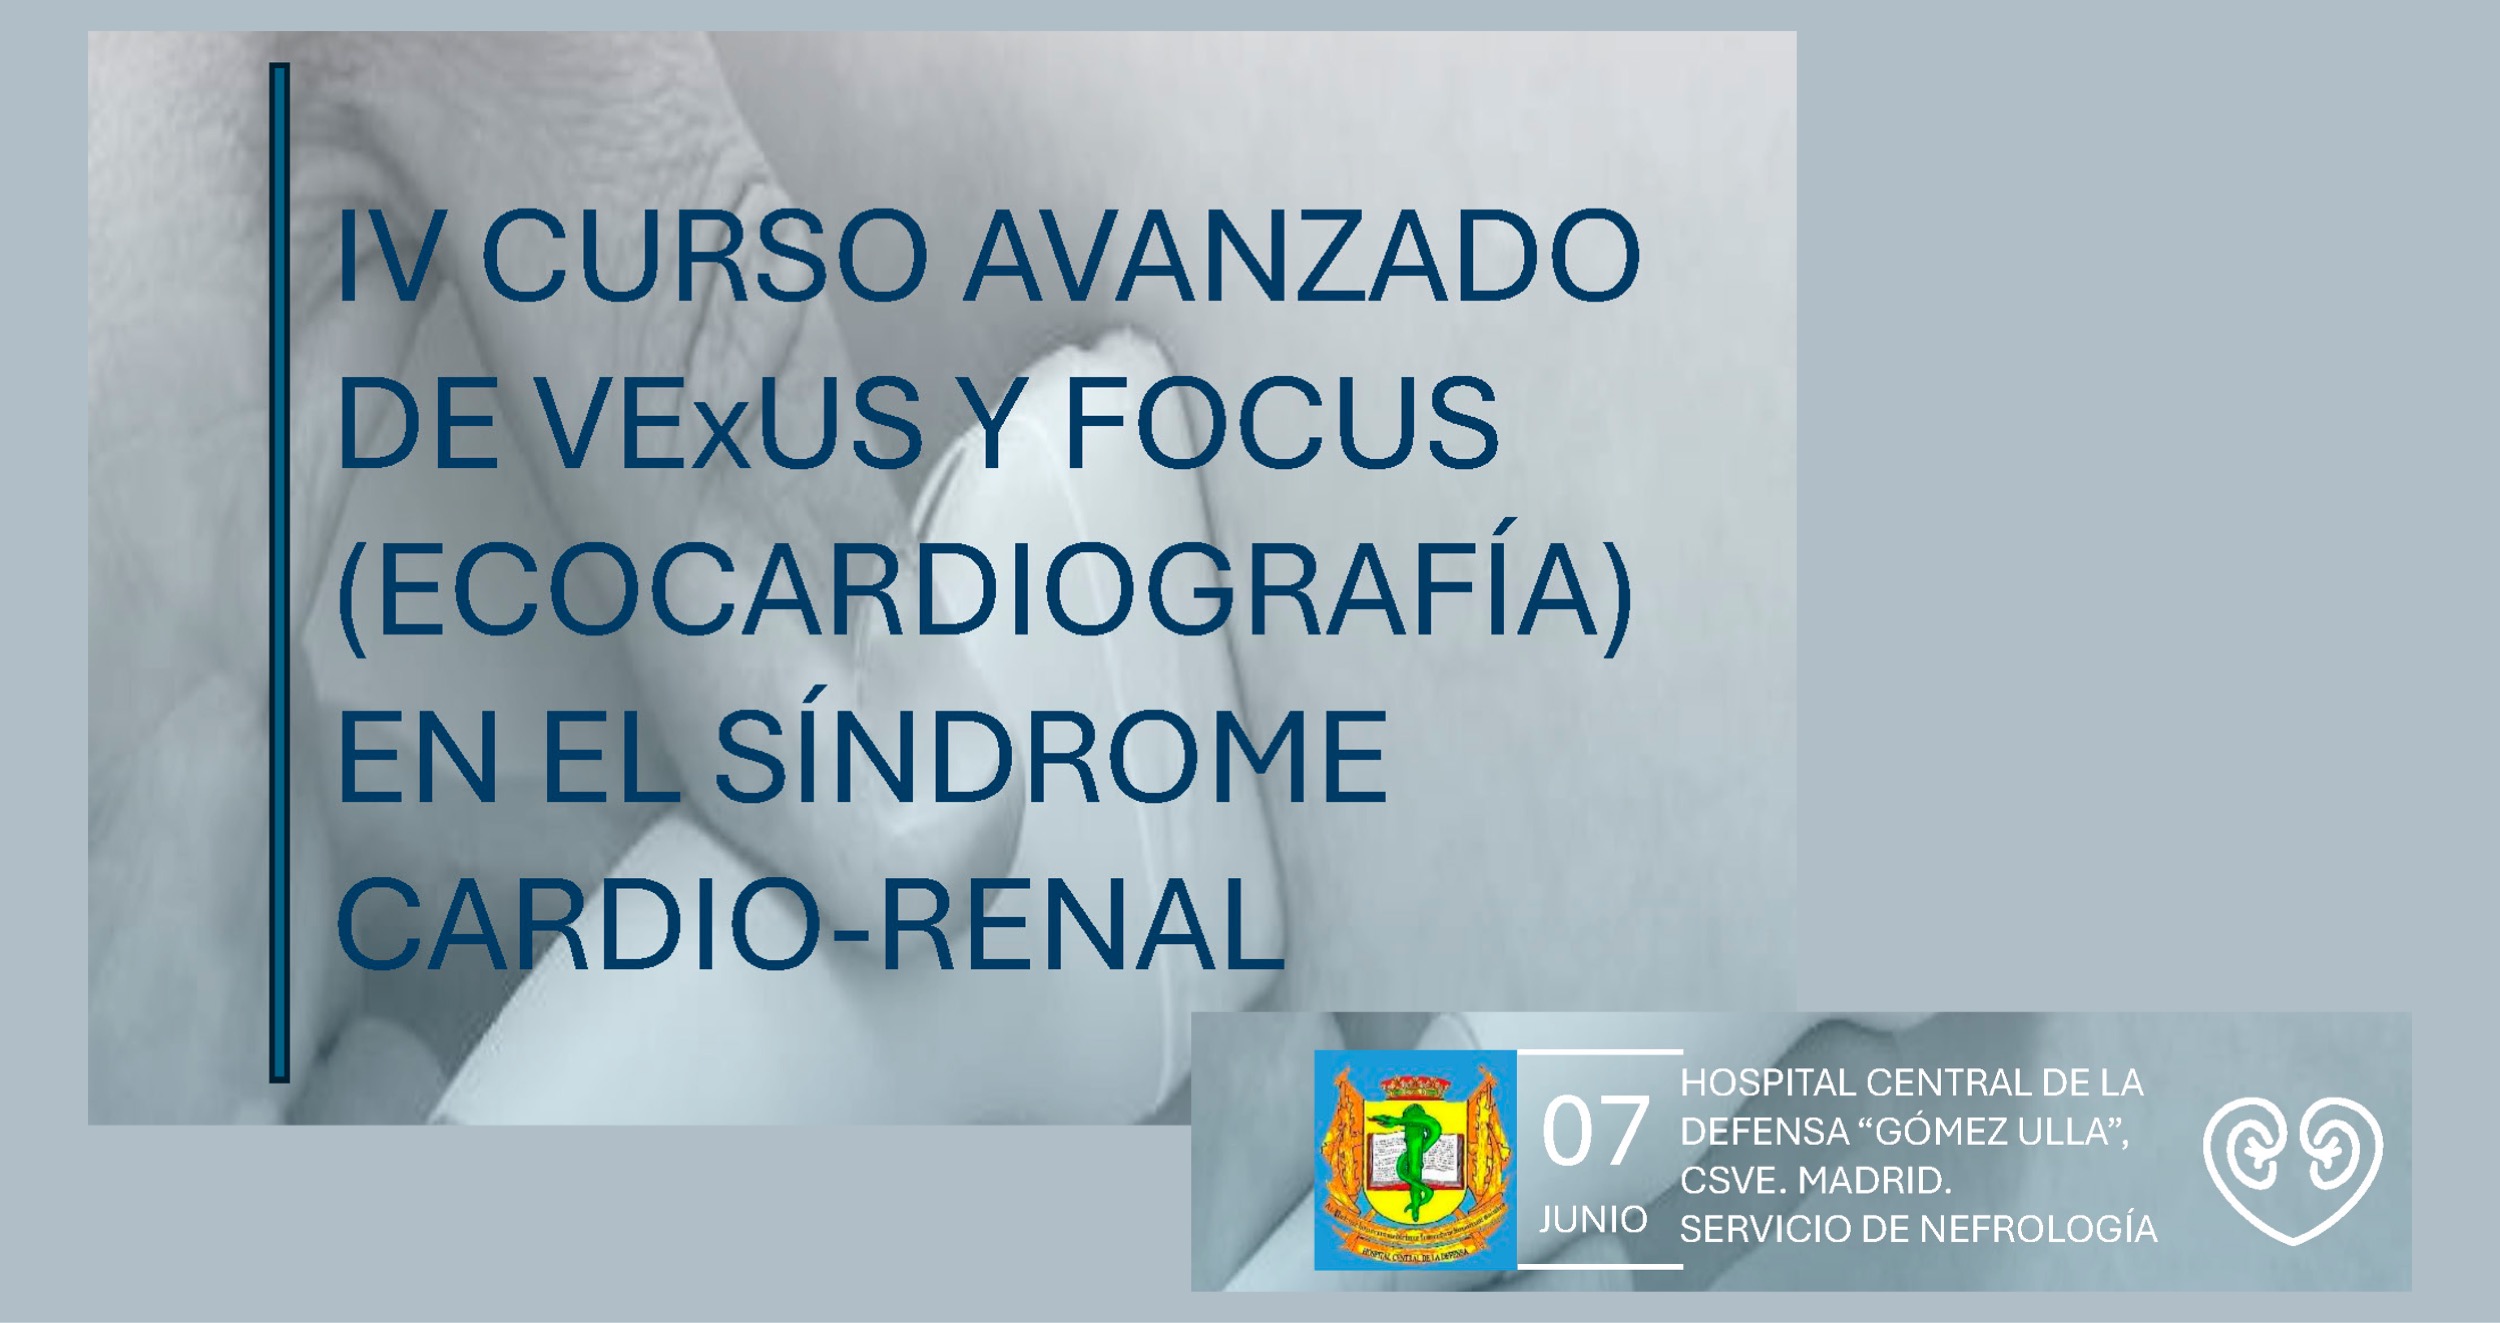 IV Curso avanzado de VExUS y FOCUS en el síndrome cardio-renal